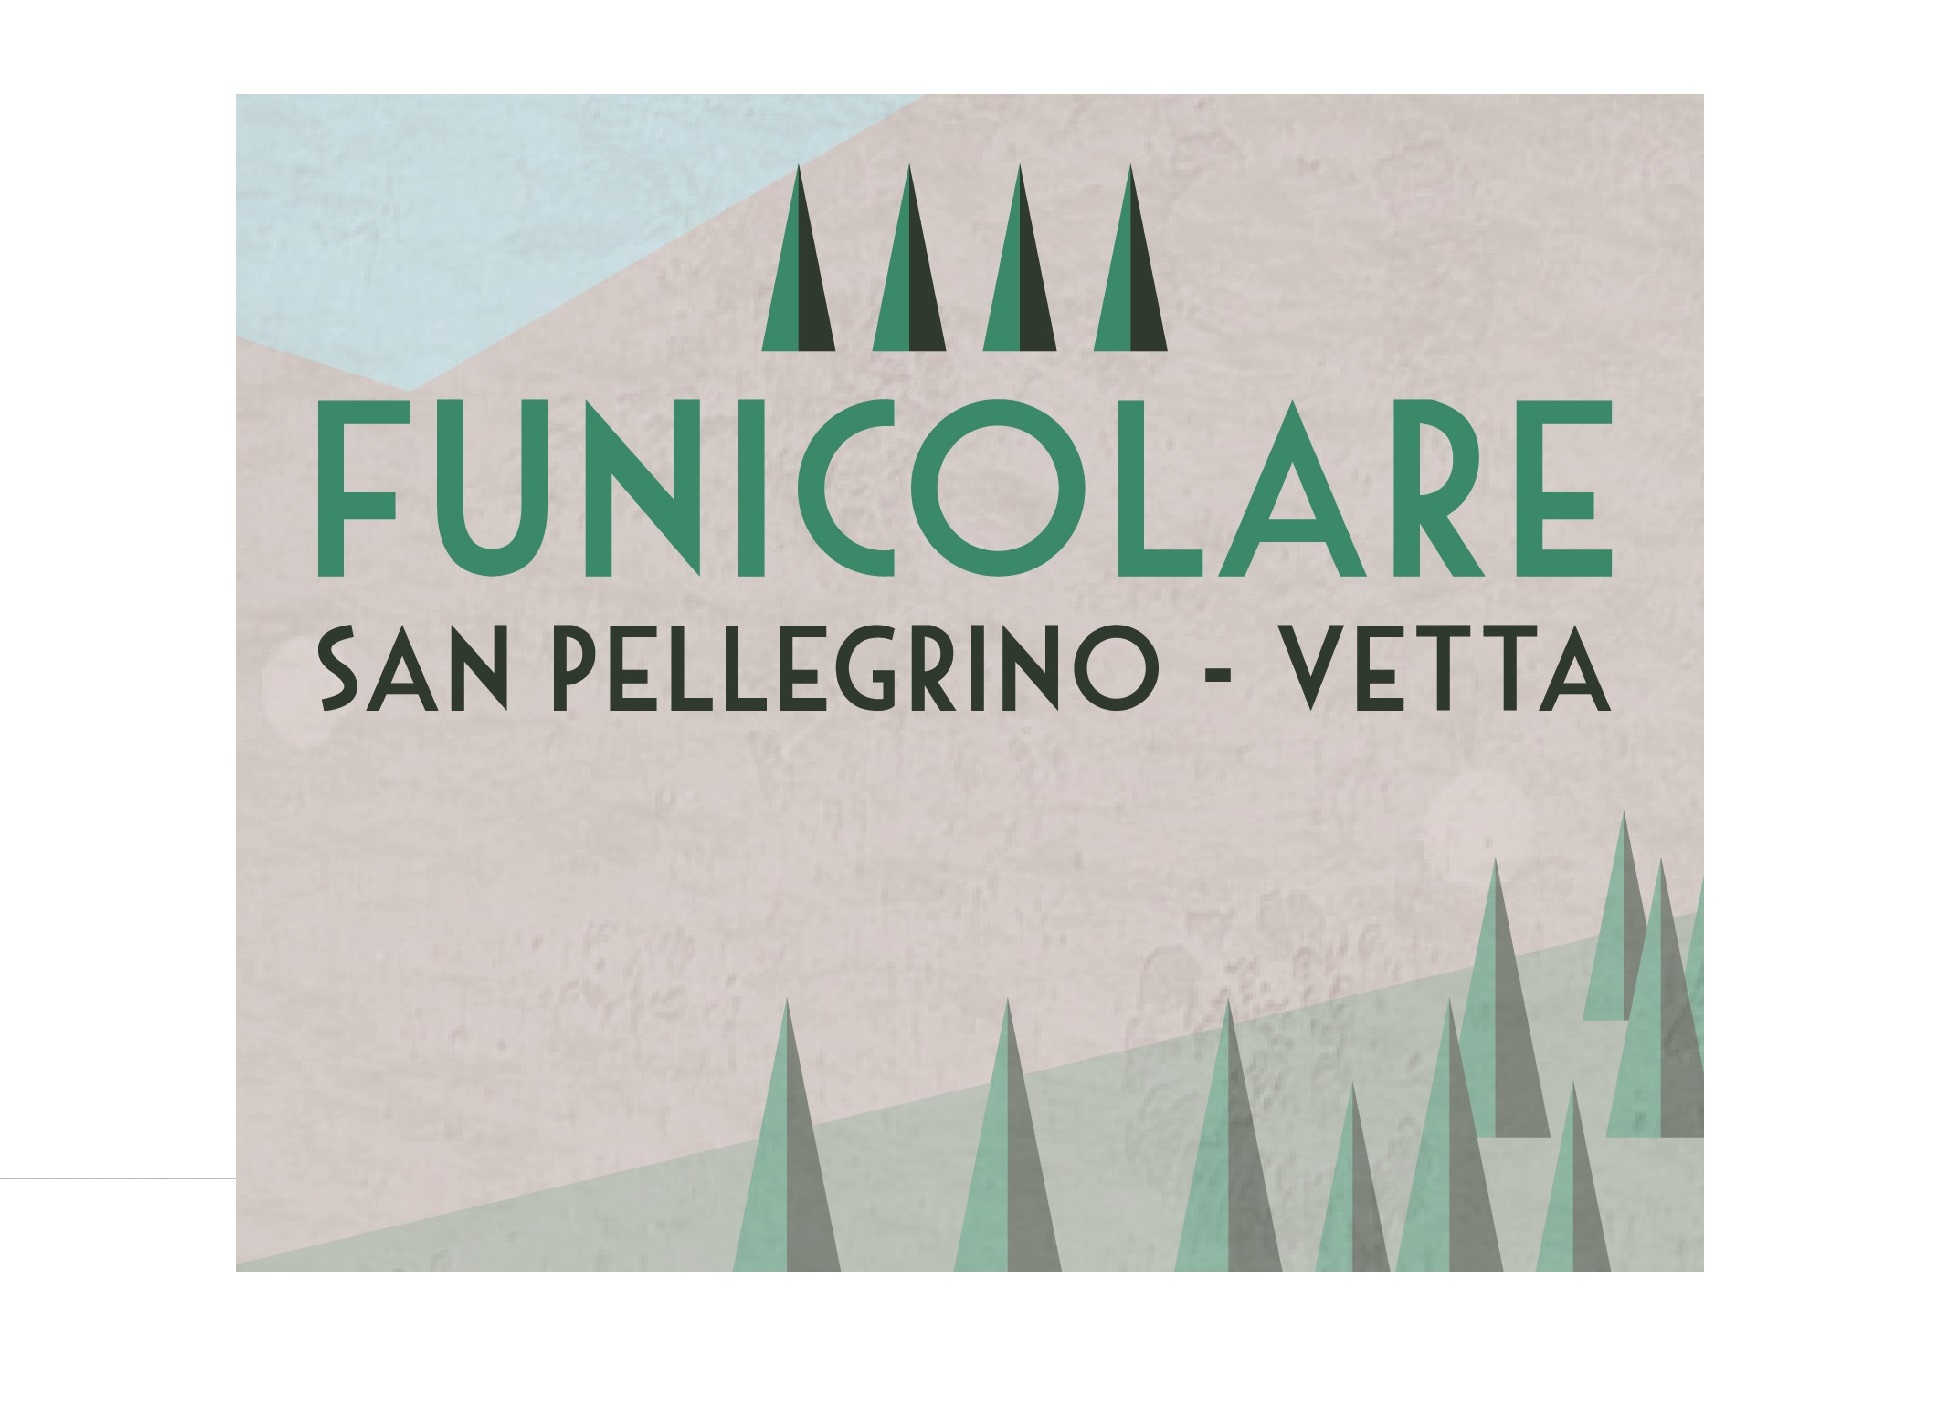 Funicolare San Pellegrino – Vetta. Informazioni utili.